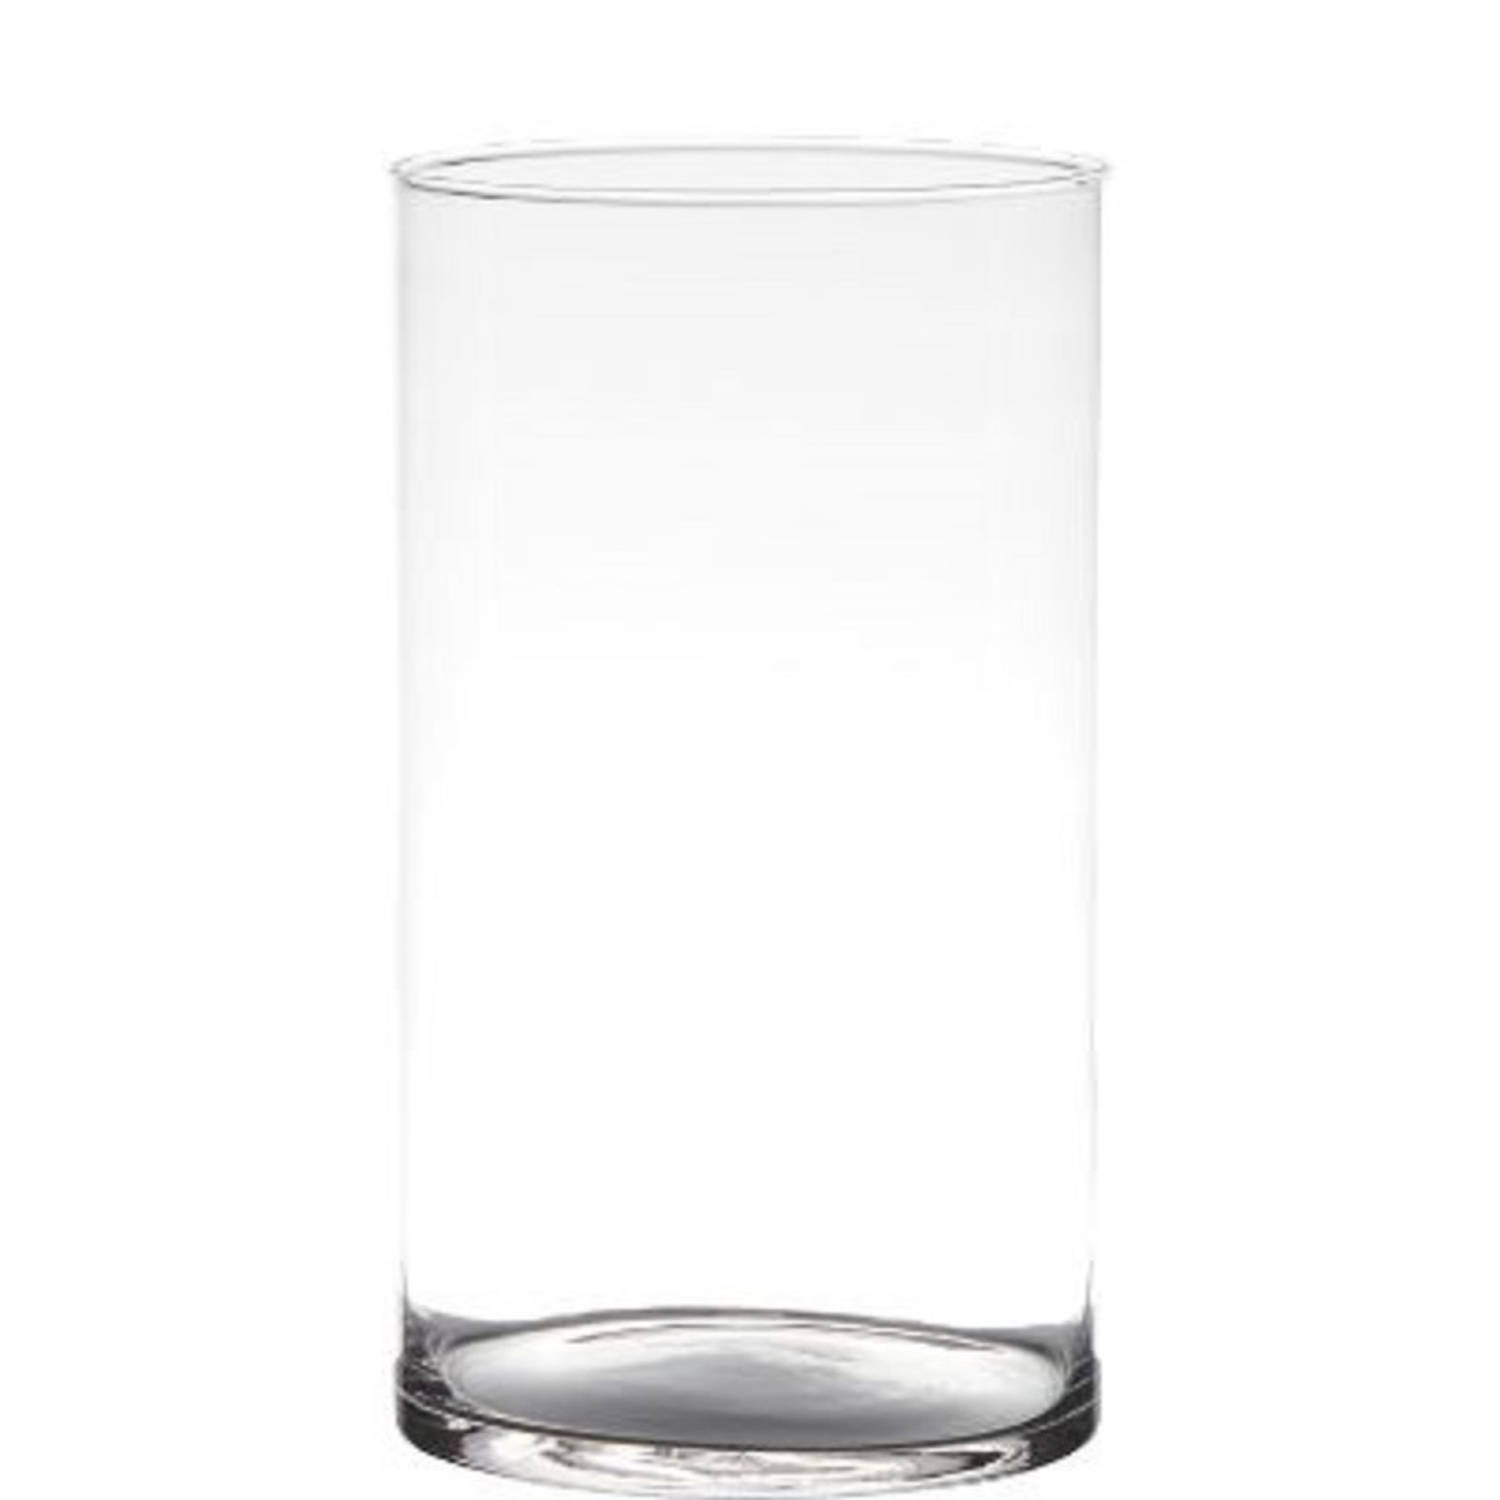 Transparante home-basics Cylinder vorm vaas/vazen van glas 29 x 14 cm - Bloemen/takken/boeketten vaas voor binnen gebruik